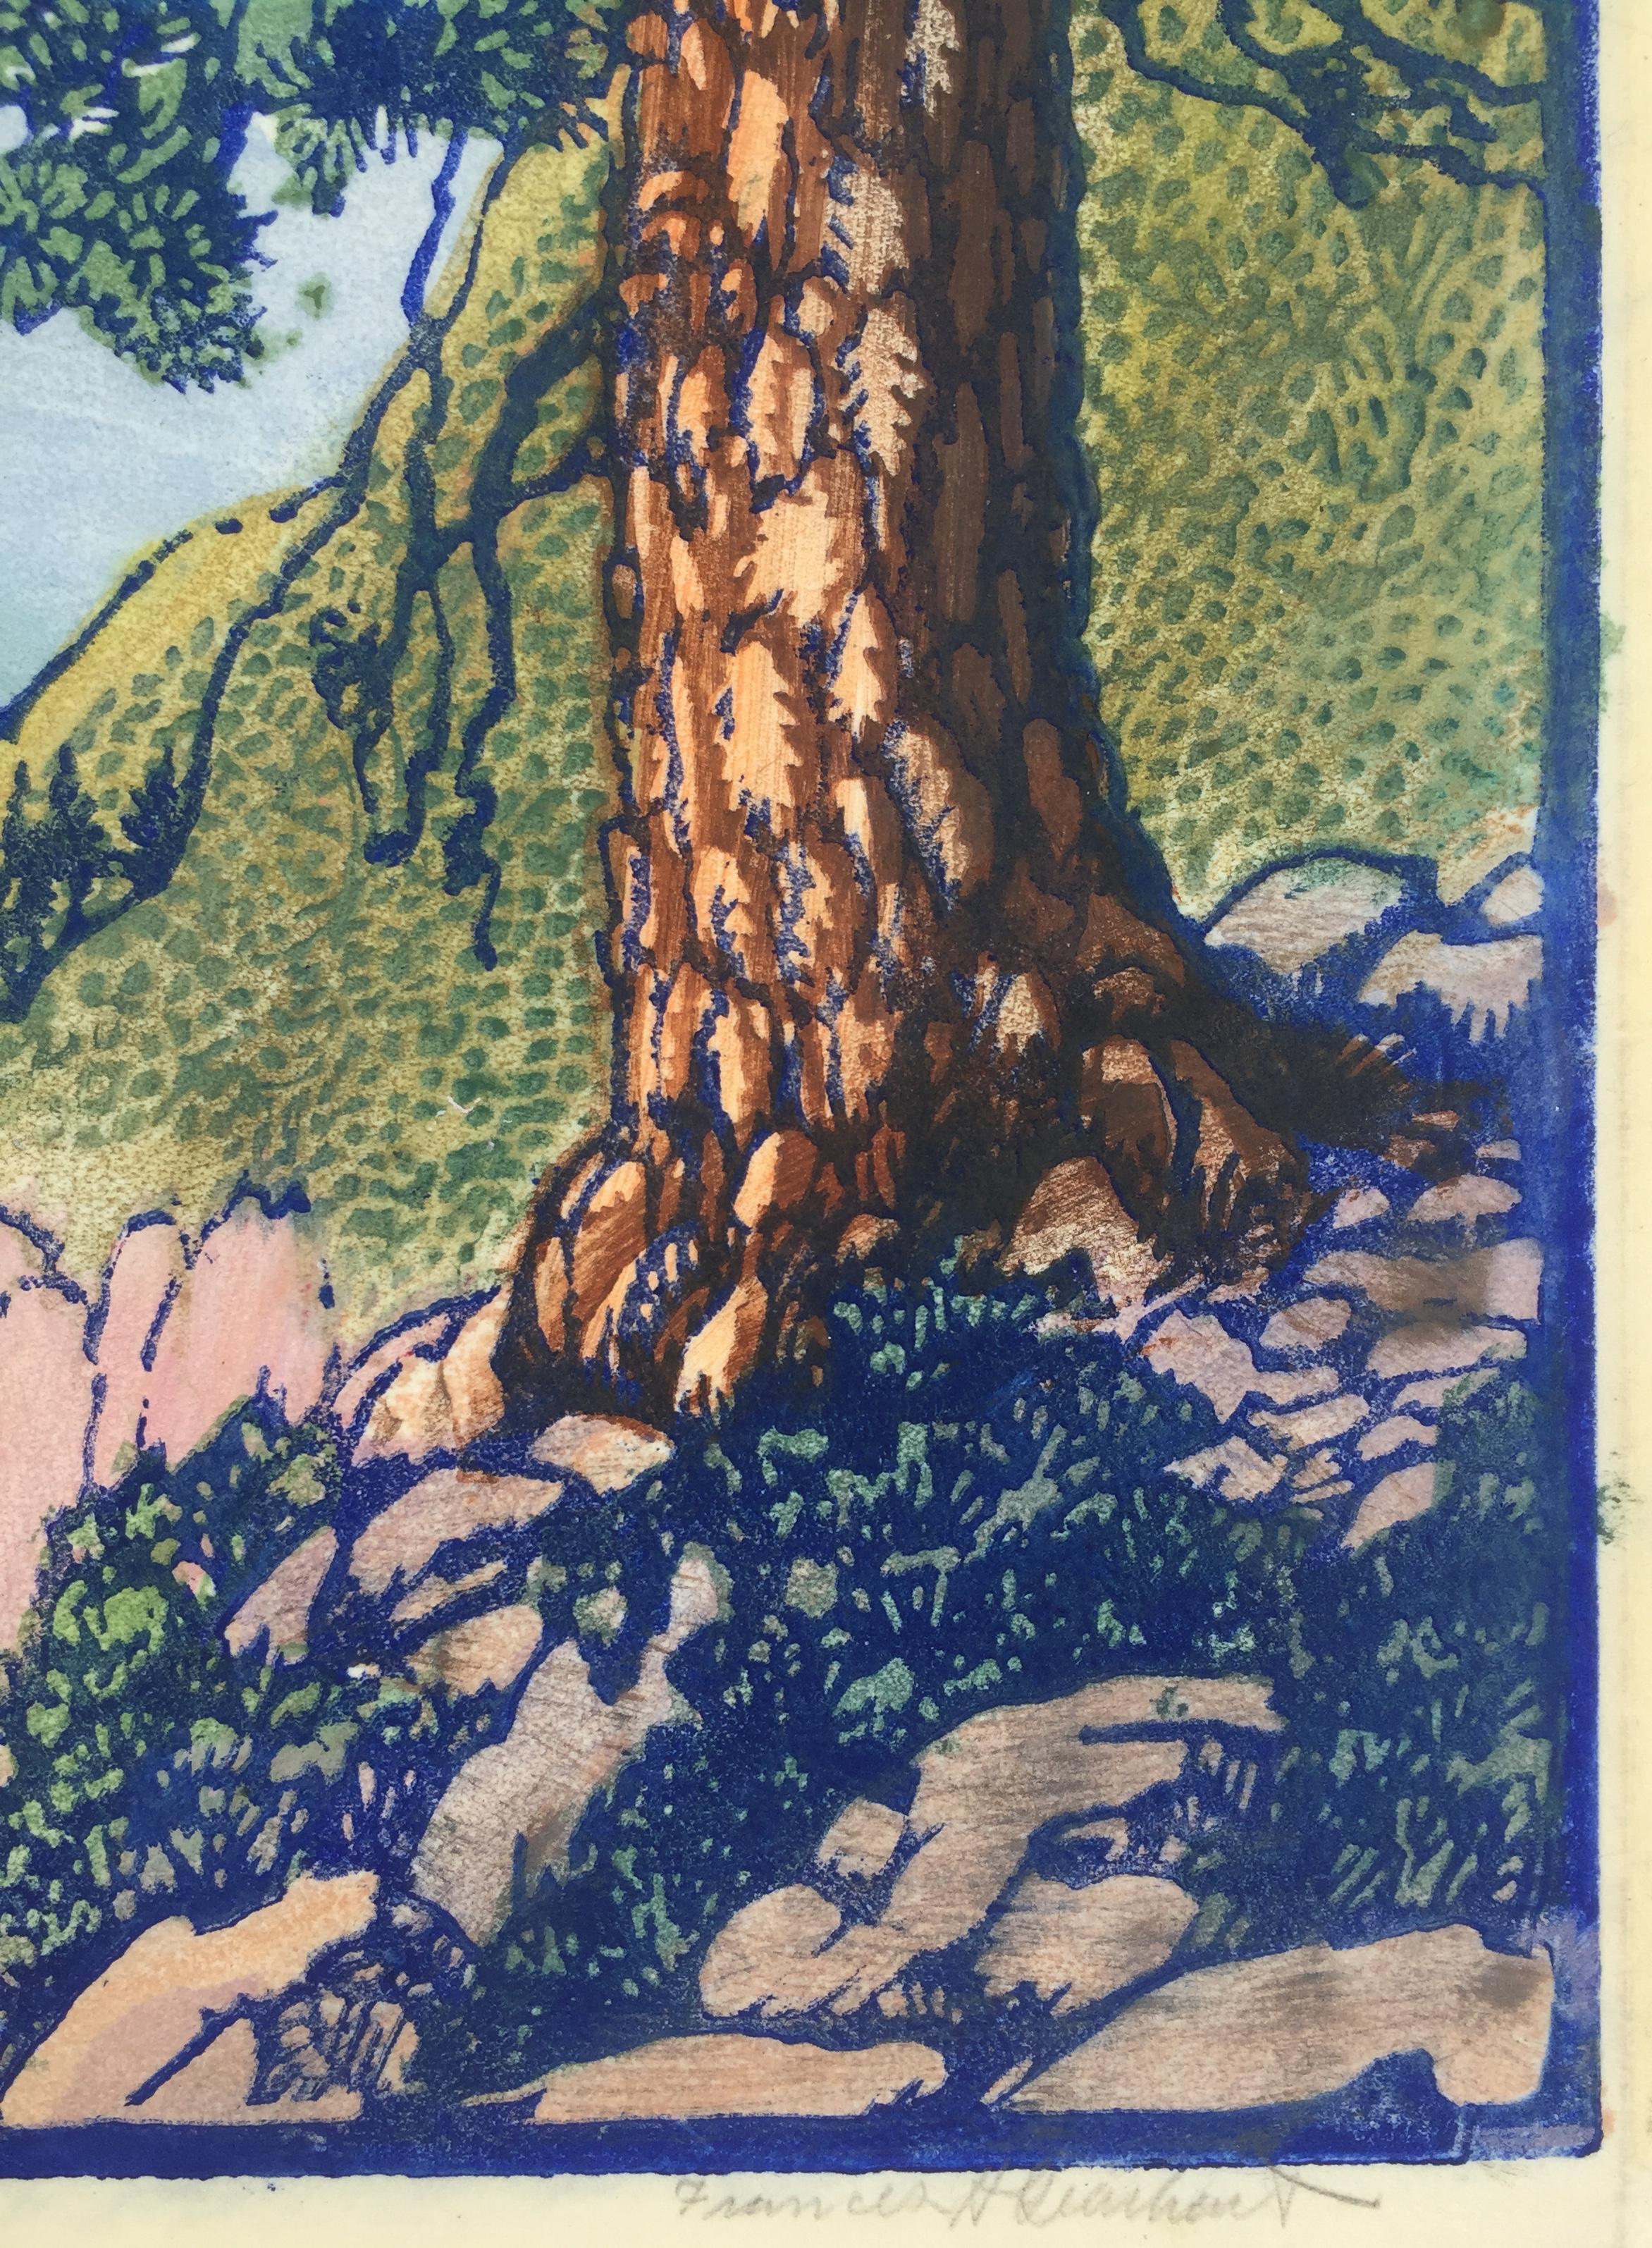 THE OLD PINE – sehr gutes, großformatiges Werk eines Meisters des Farbblockdrucks – Print von Frances H. Gearhart